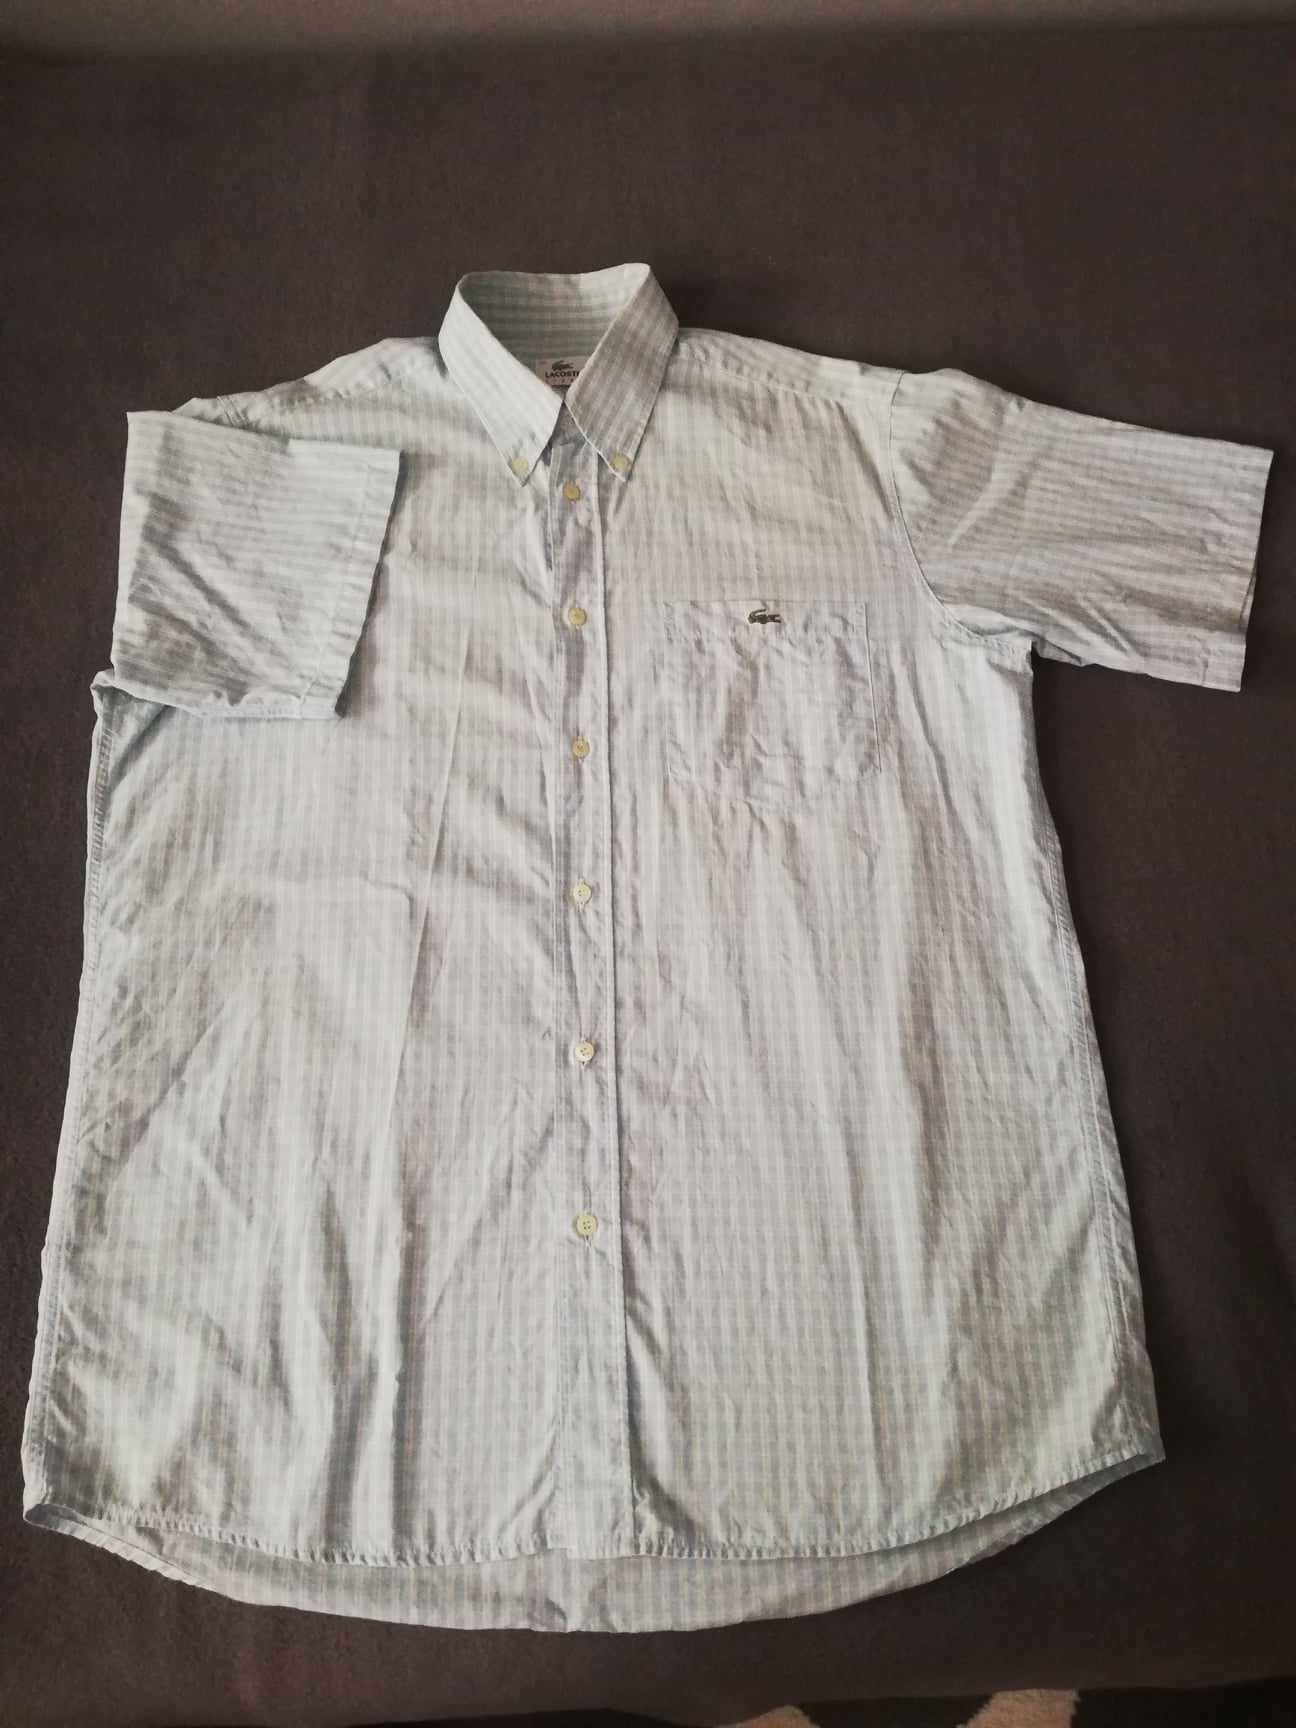 Oryginalna koszula z krótkim rękawem w niebieską kratkę LACOSTE  L(40)